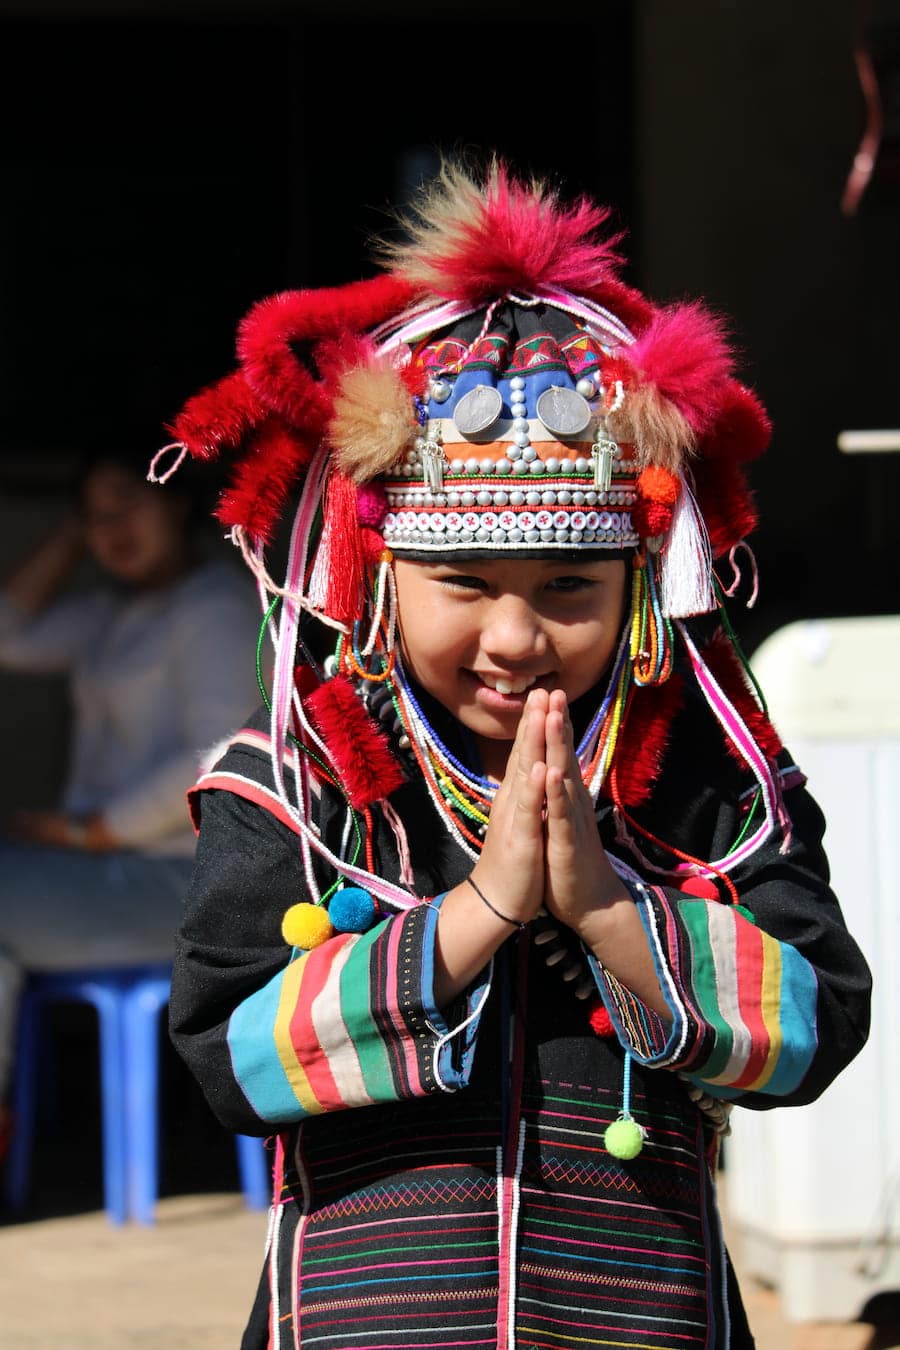 Enfant de la tribu Akha au nord de la Thaïlande dans notre article Road trip au nord de la Thaïlande à la rencontre des tribus des montagnes #thailande #nord #tribu #peuple #montagnes #roadtrip #asie #voyage